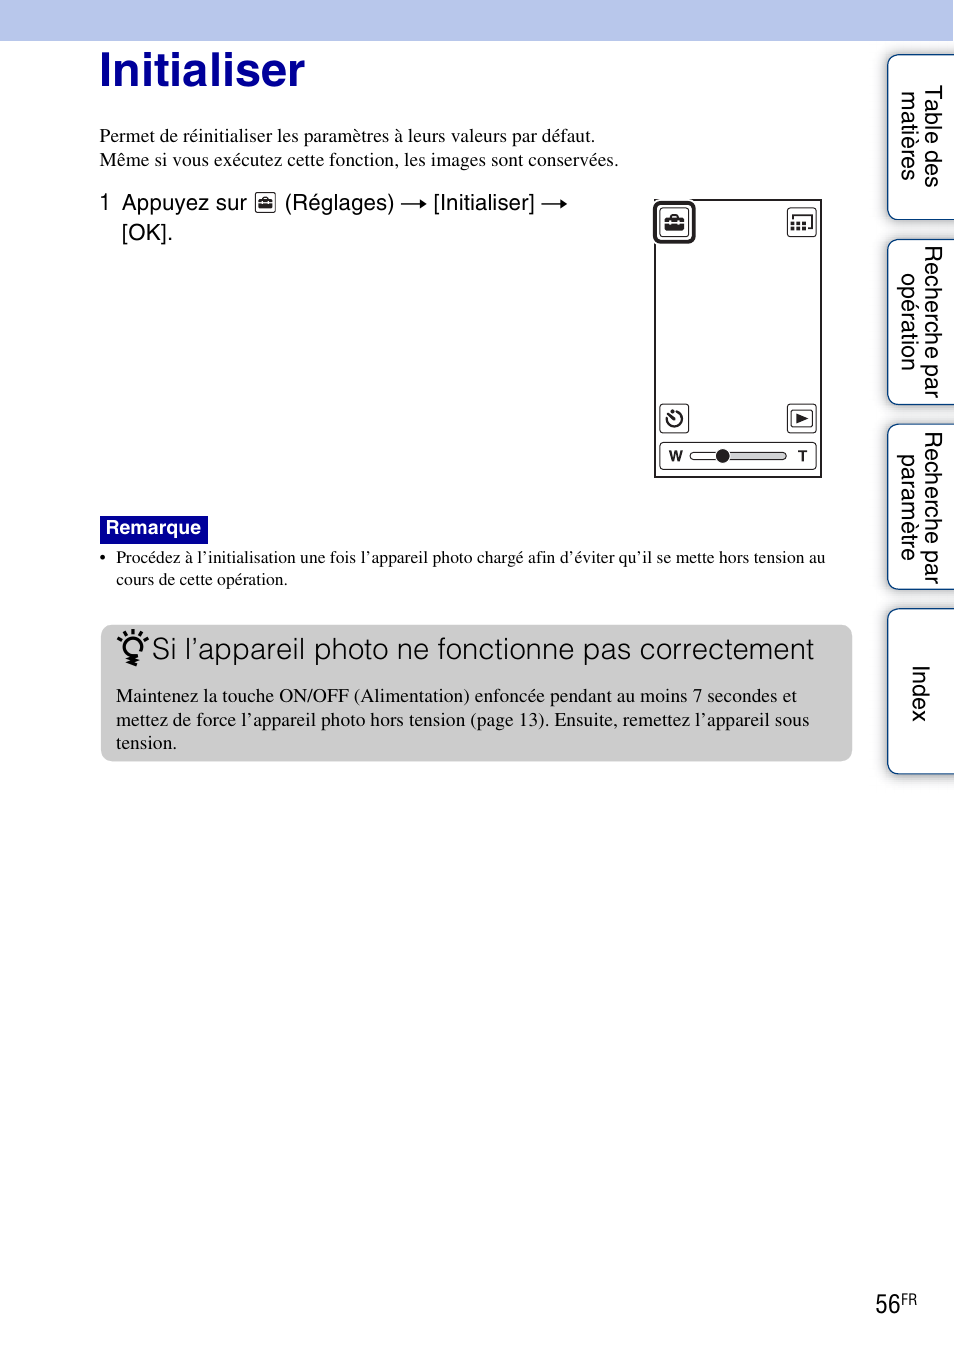 Initialiser, Si l’appareil photo ne fonctionne pas correctement | Sony bloggie MHS-TS20 Manuel d'utilisation | Page 56 / 75